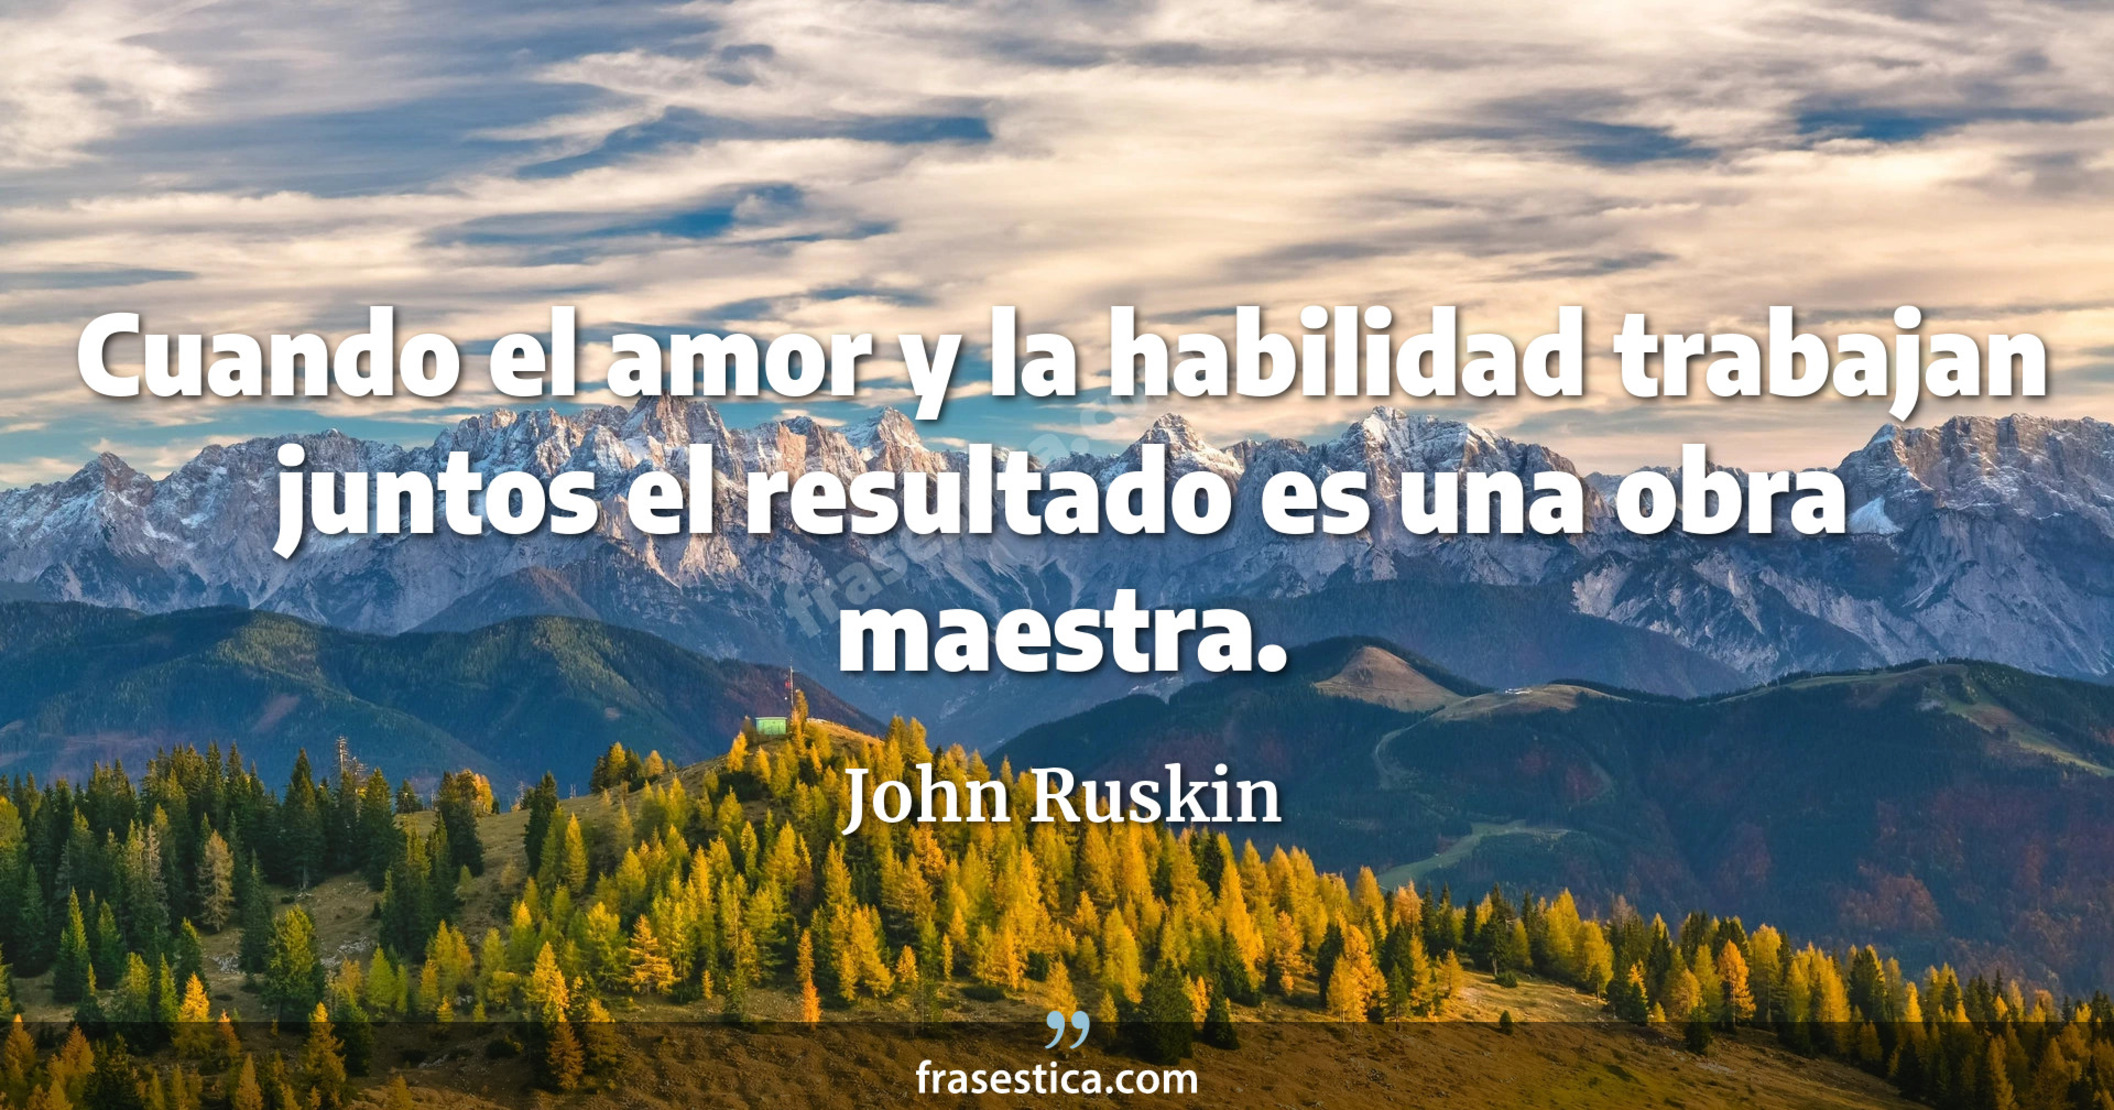 Cuando el amor y la habilidad trabajan juntos el resultado es una obra maestra. - John Ruskin